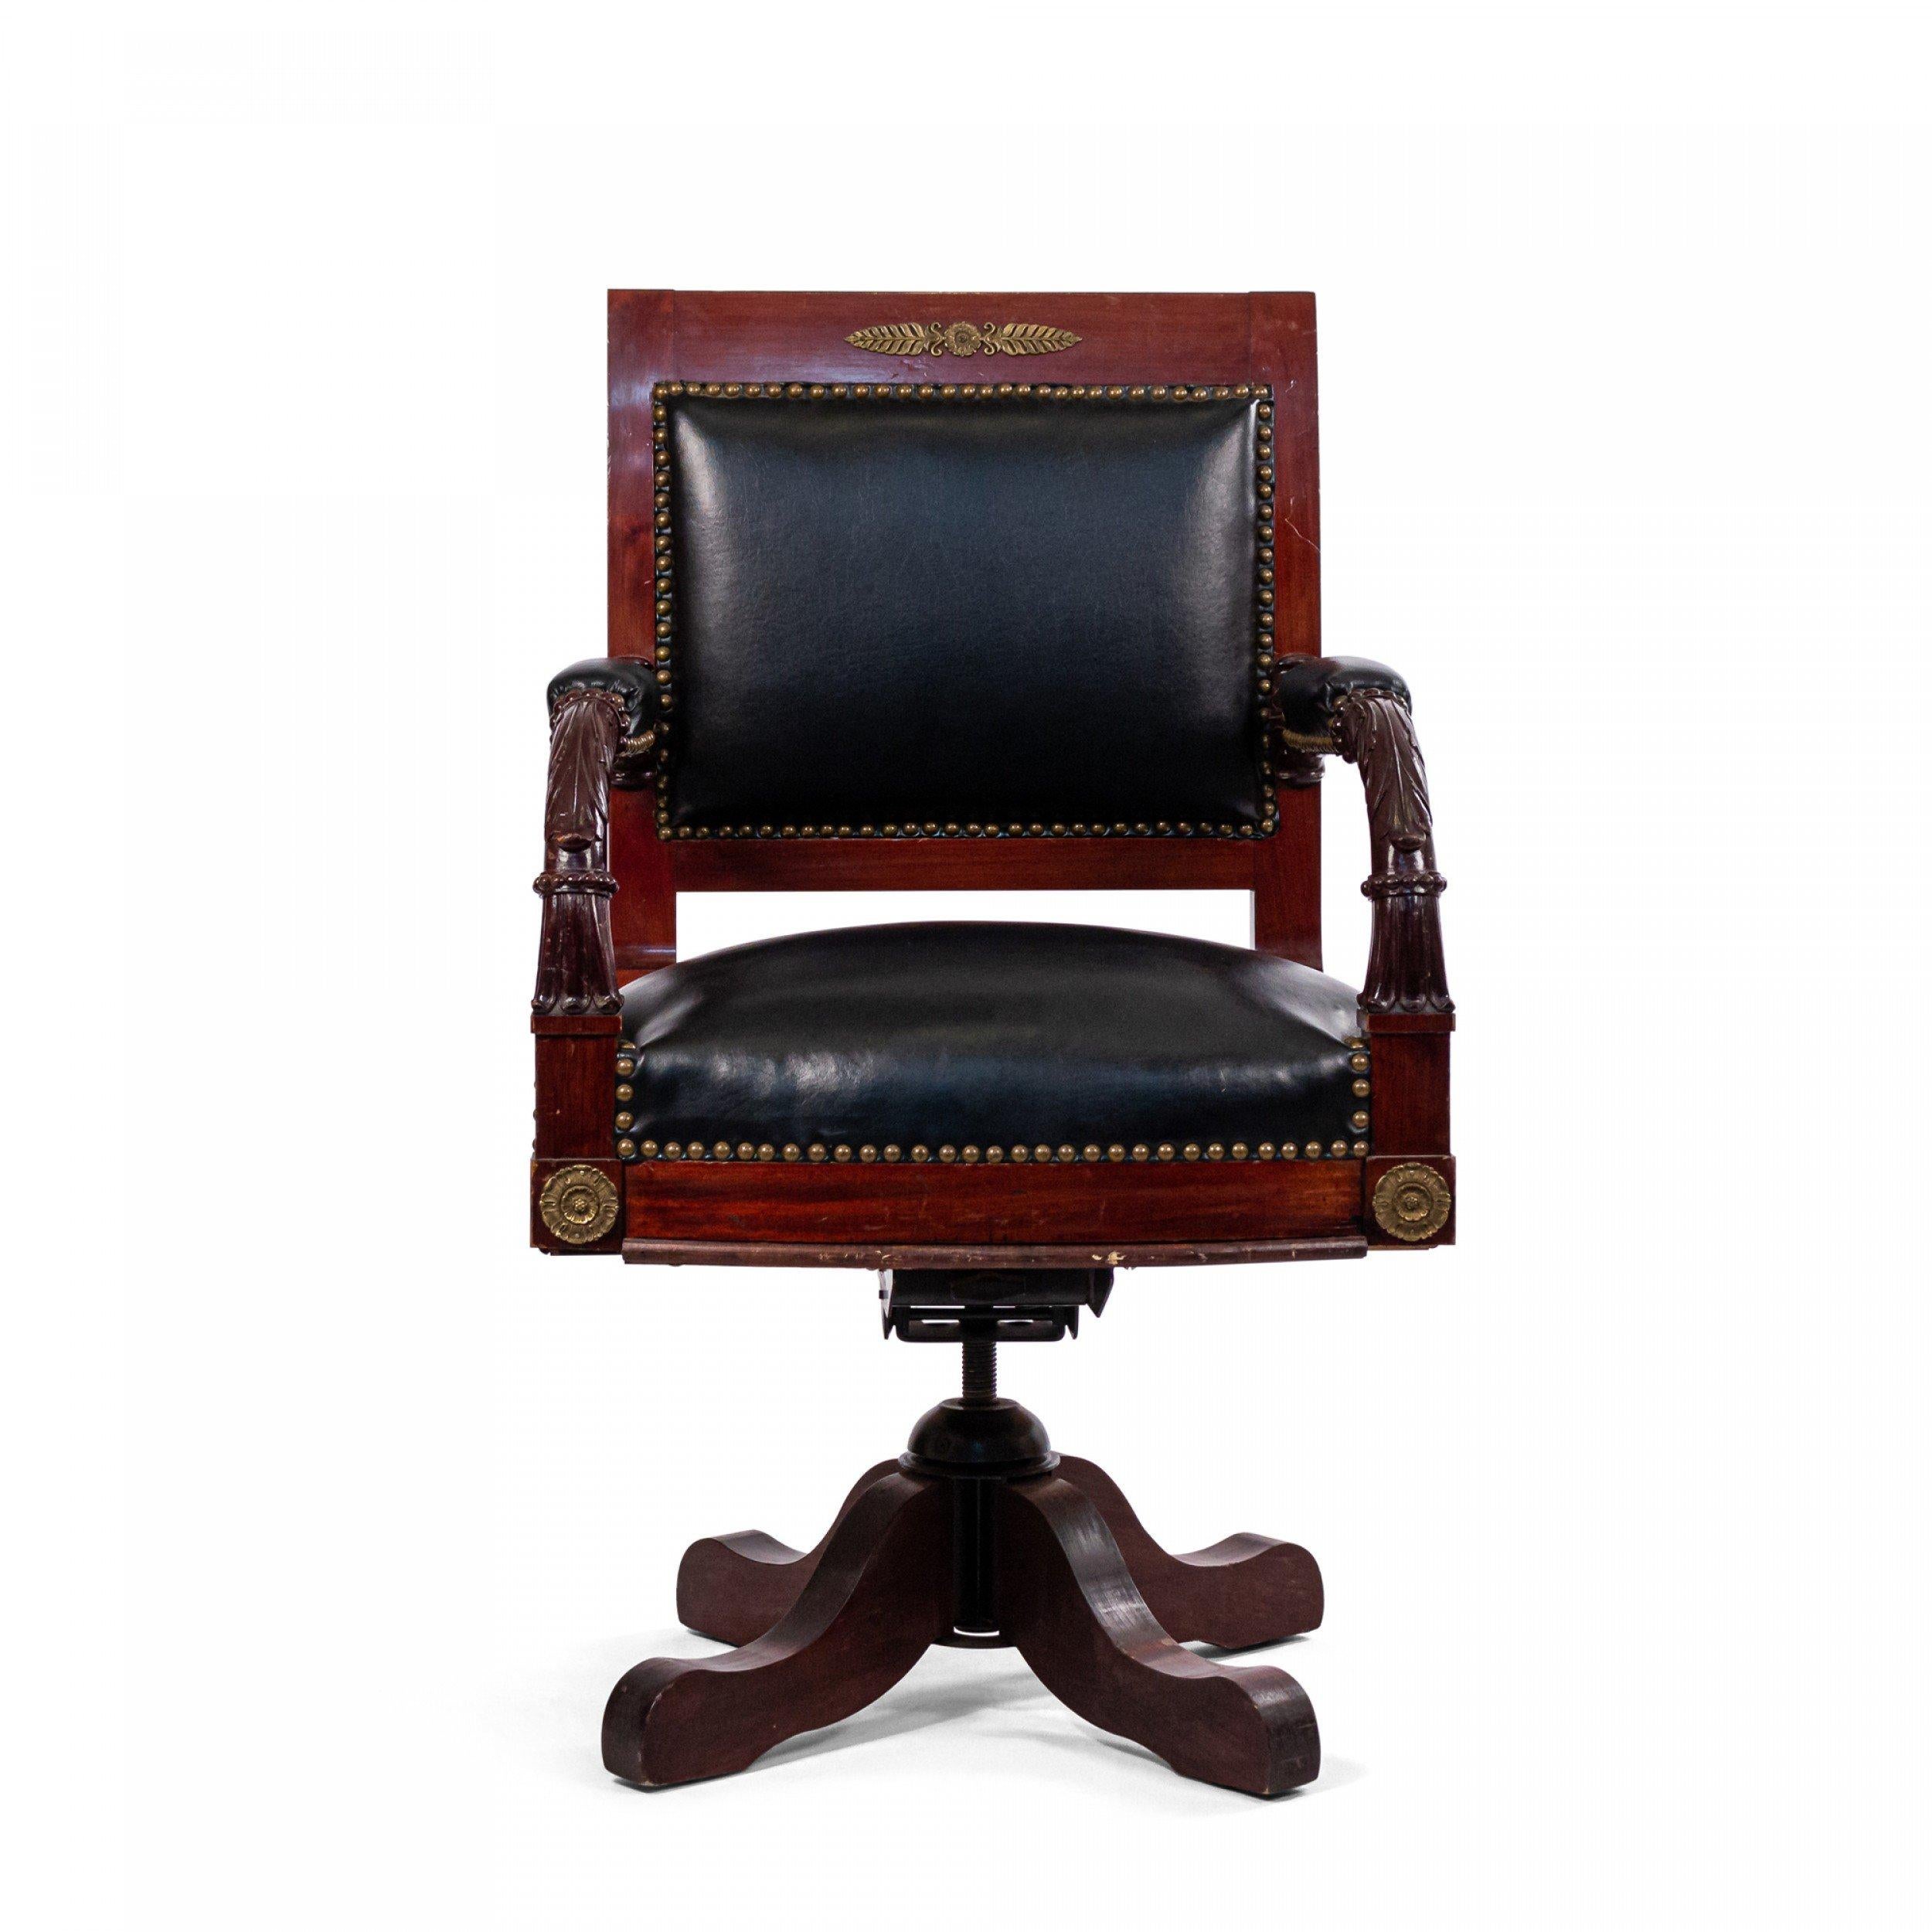 19. Jahrhundert Französisch Empire-Stil Ormolu montiert Mahagoni offenen Drehgestell Sessel mit schwarzem Leder Sitz und Rücken.